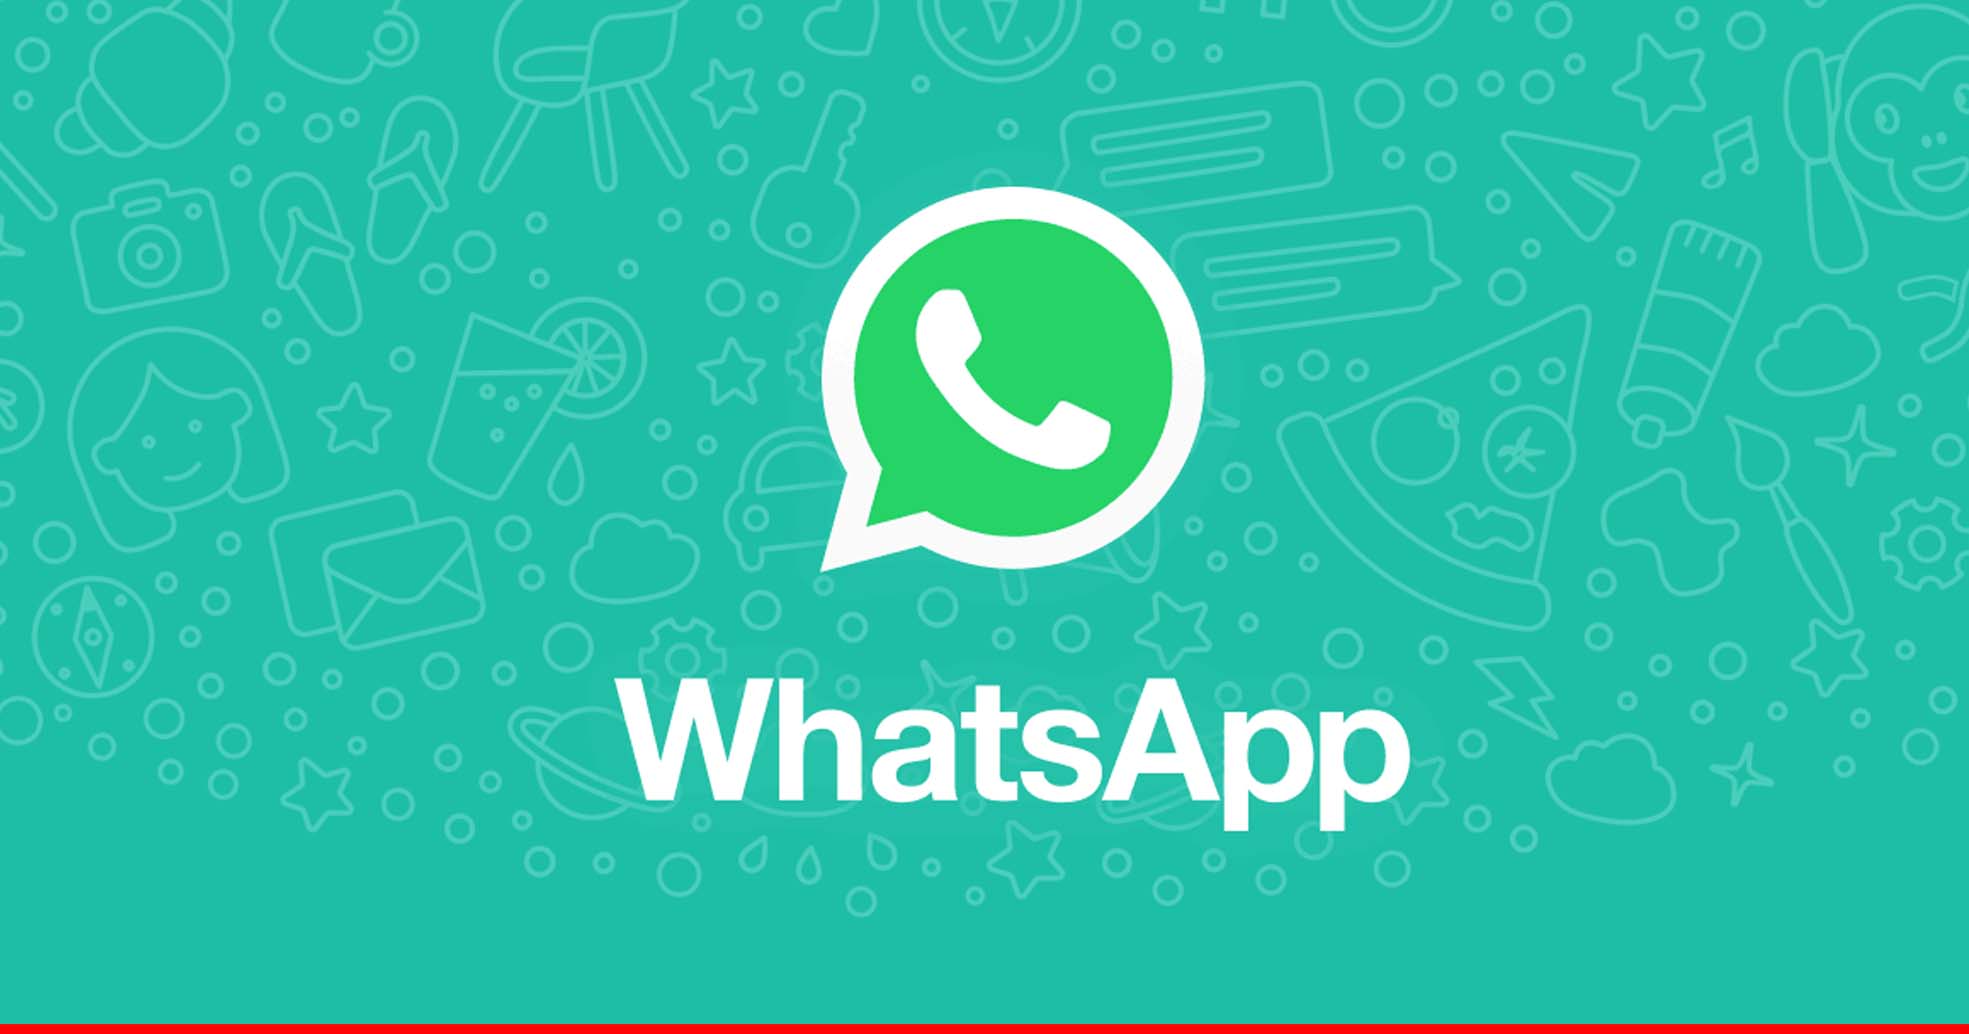 WhatsApp का नया फीचर! आसानी से करें एंड्रॉयड फोन से iPhone में ट्रांसफर